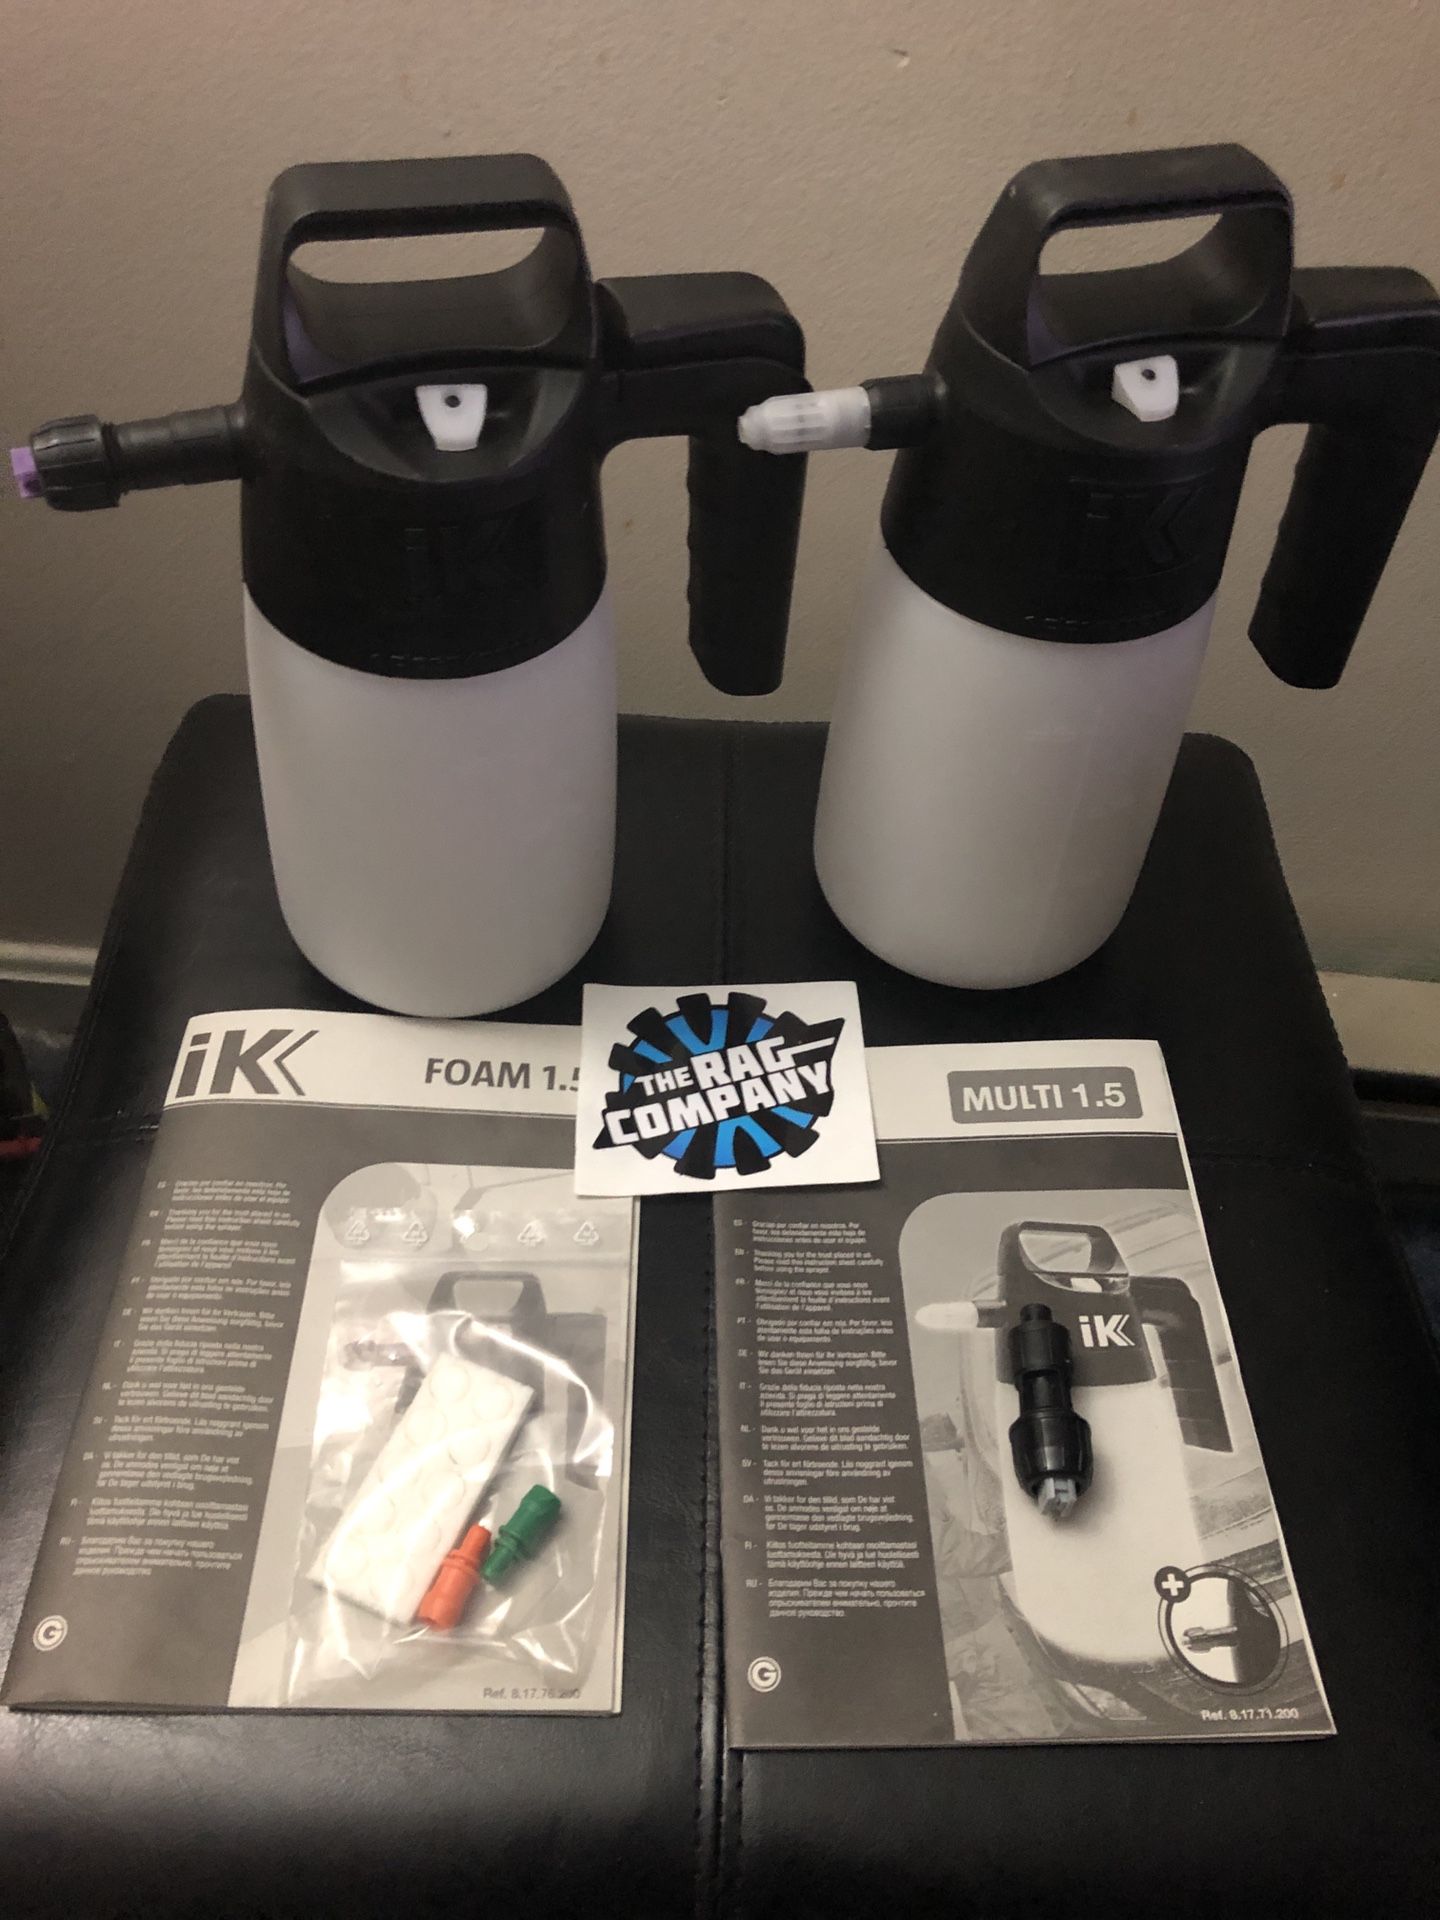 IK Foam and Multi Sprayer